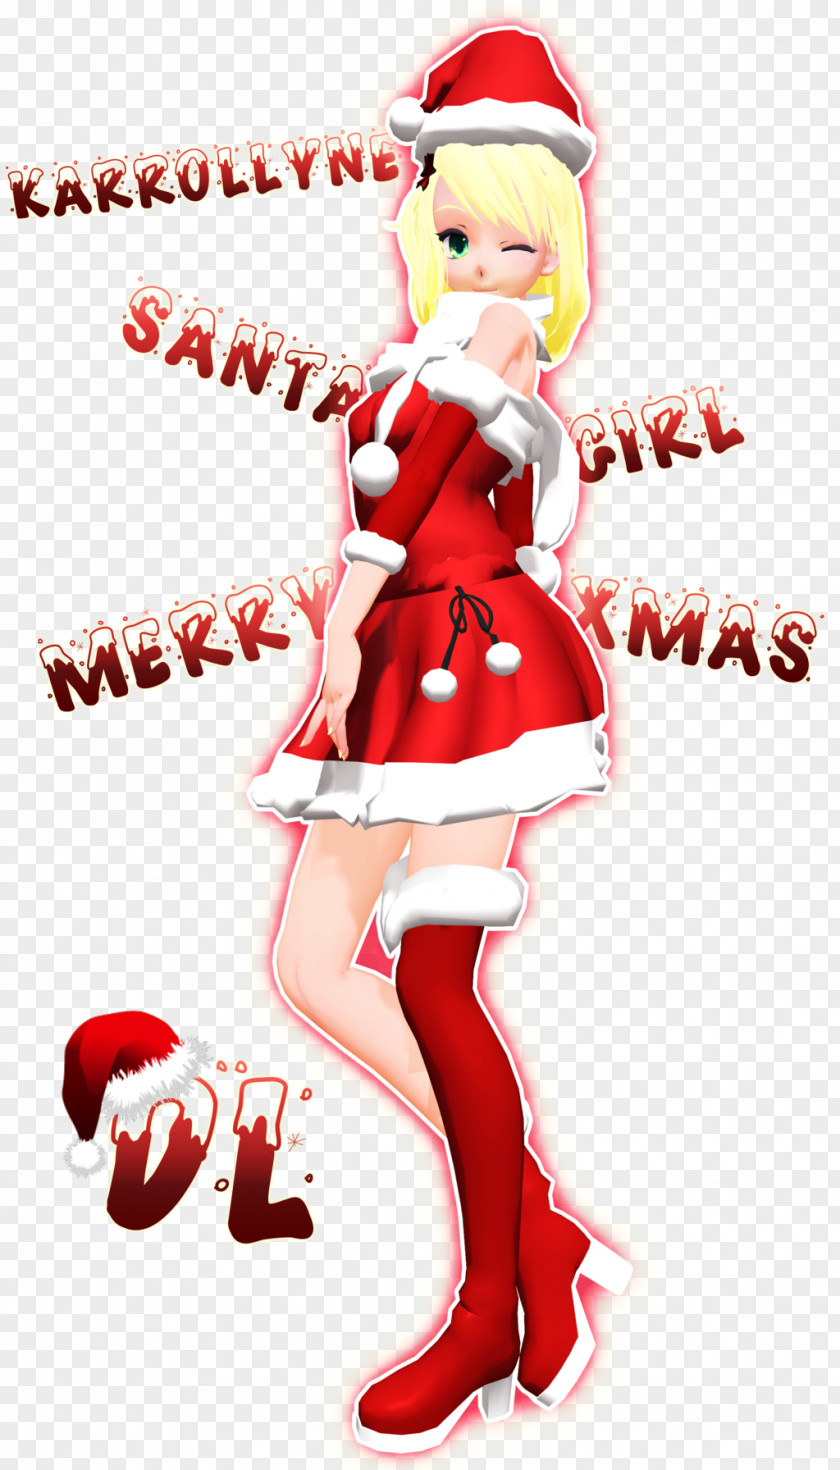 Santa Claus Christmas Ornament Suit Elf Costume PNG